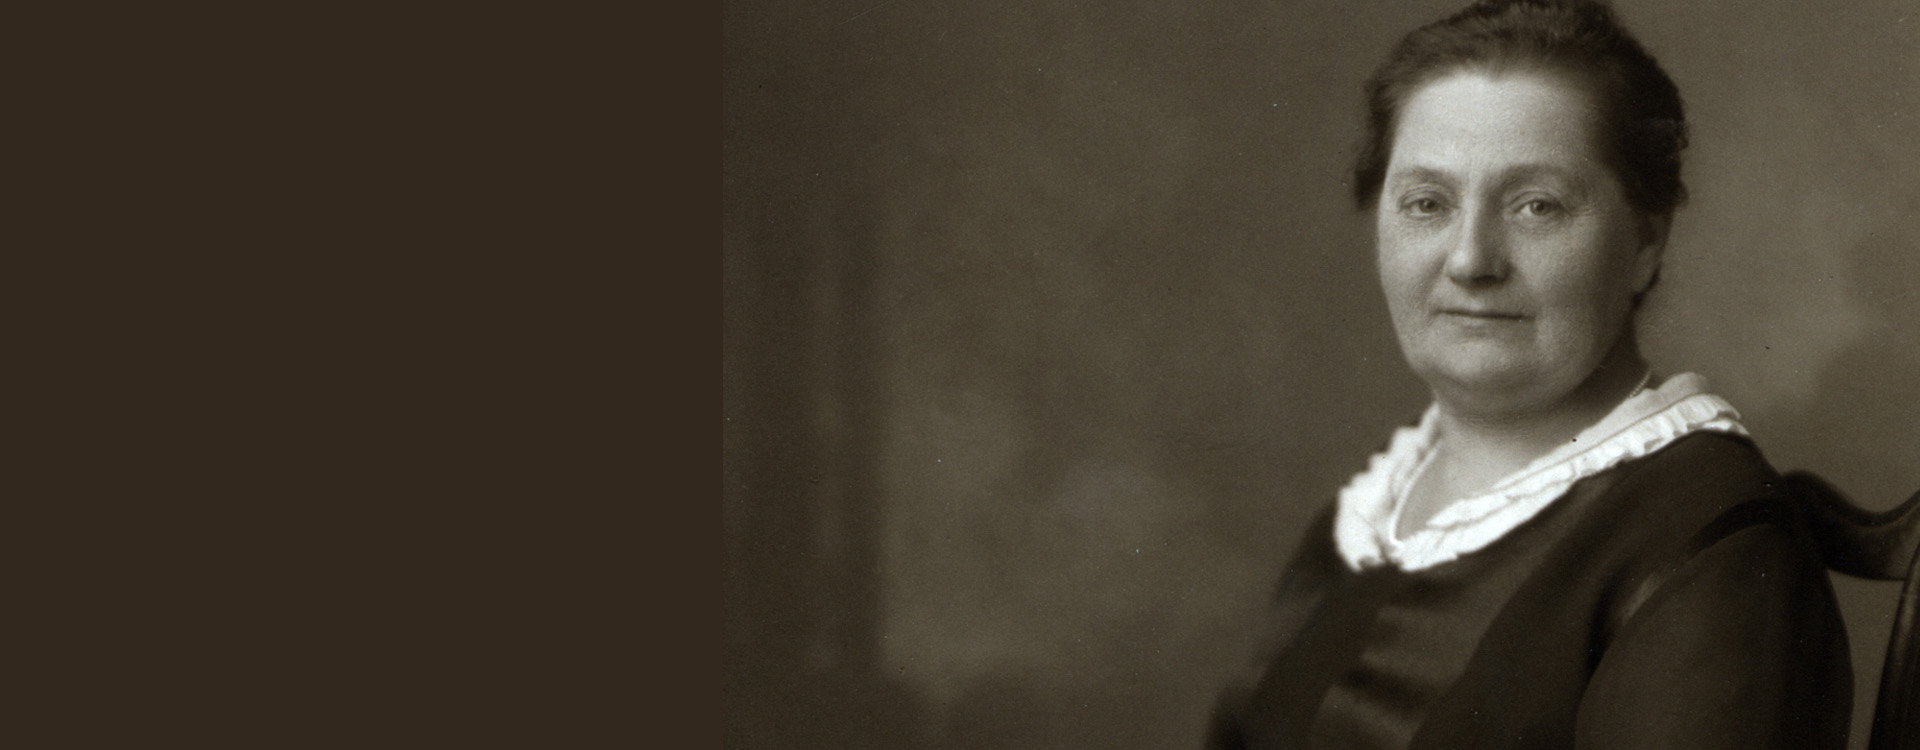 Fagbevægelsens Historie: Marie Christensen var en fremtrædende figur i kampen for tjenestepigernes rettigheder – kampen ”for at løsne Danmarks slavinders lænker”, som hun selv formulerede det. Hun cementerede sin betydning, da hun i 1904 stiftede De Samvirkende Tjenestepigeforeninger